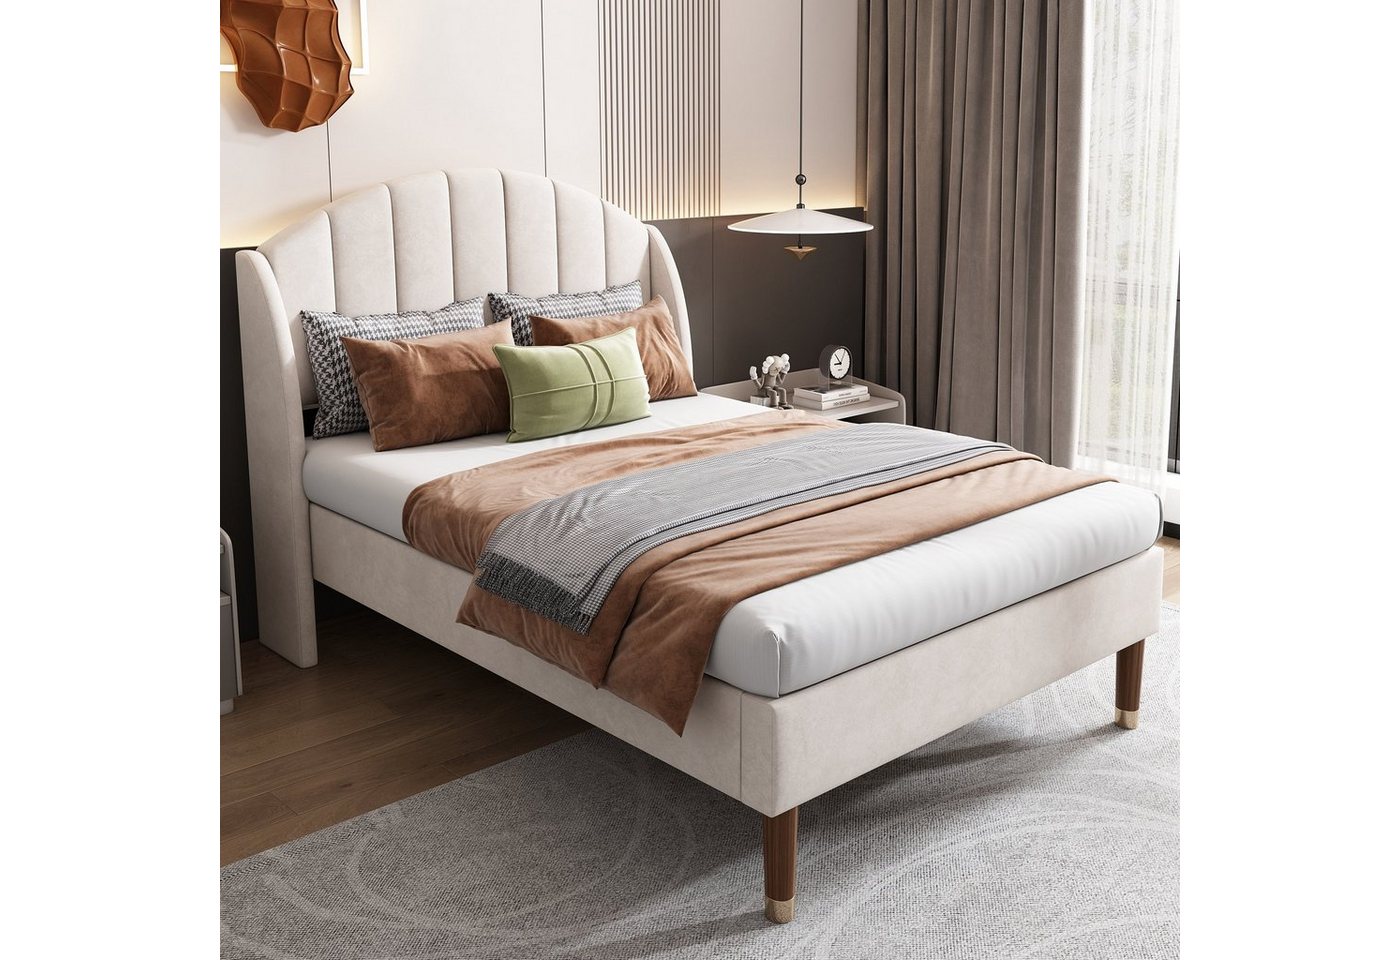 Celya Polsterbett Home Schlafzimmer Bett mit flachen Nudeln Rahmen und Kopfteil, 90×200cm, Kopfteil der dicken Matratze von Celya